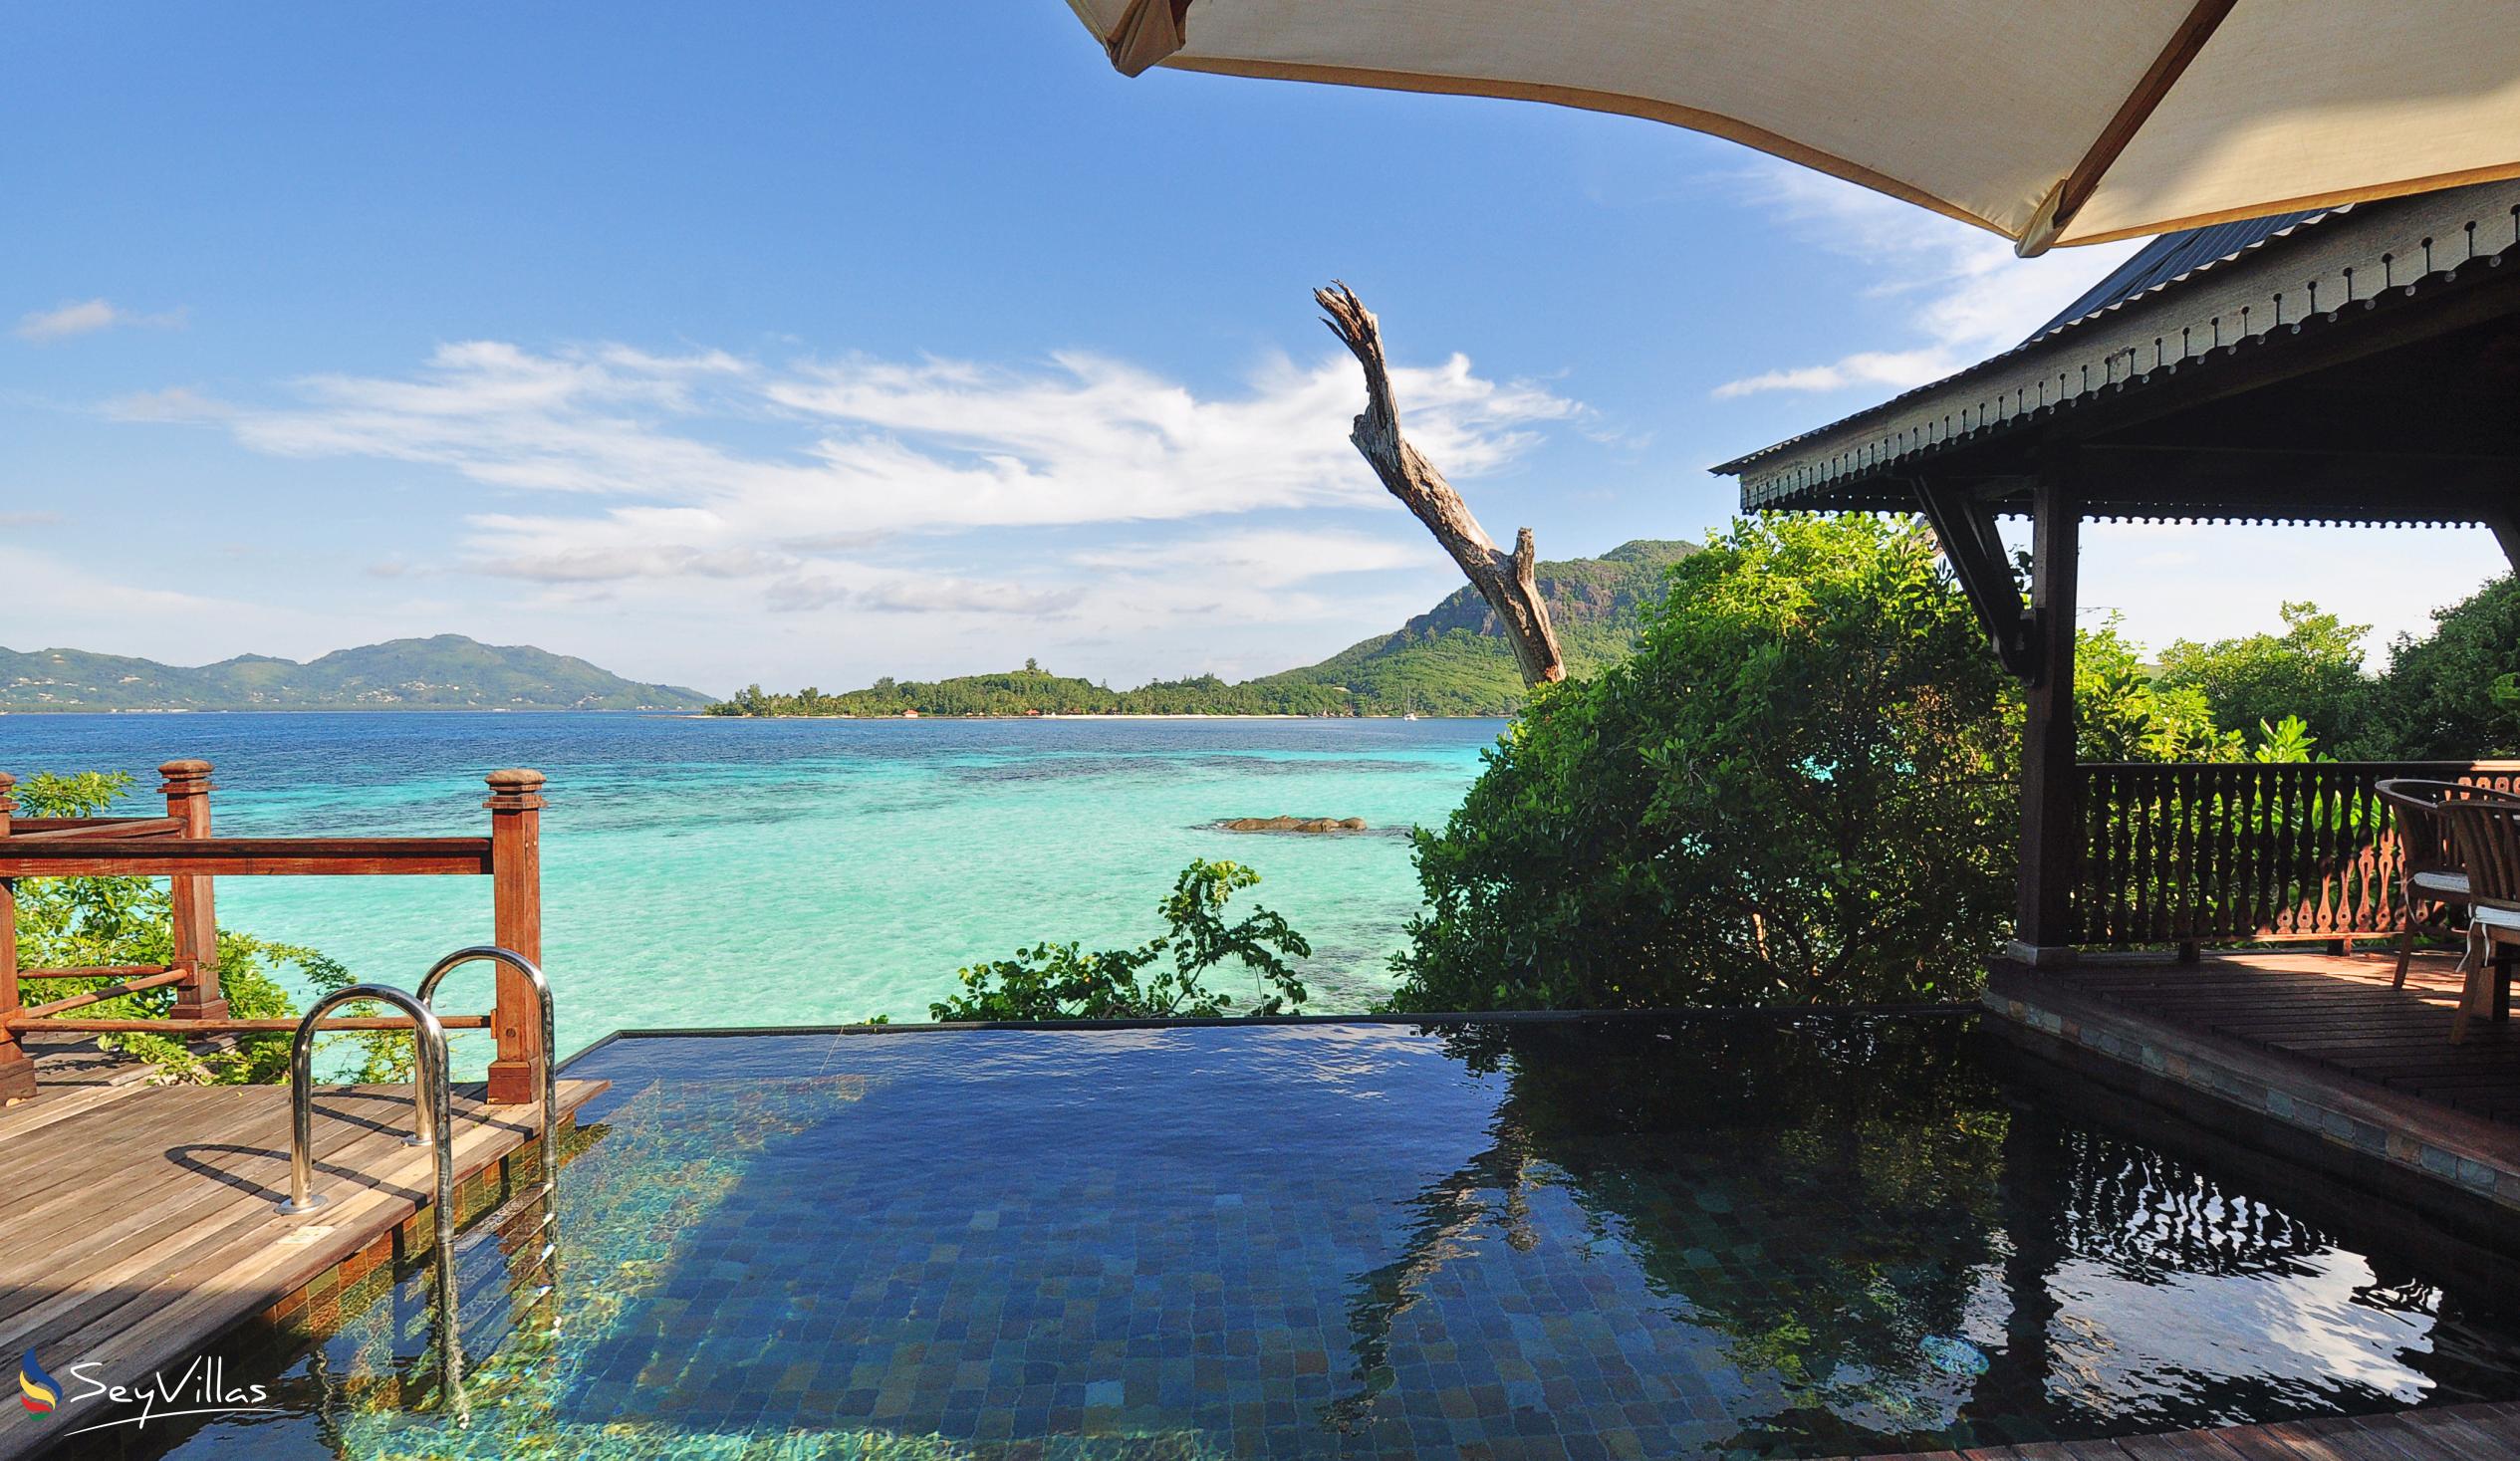 Foto 18: JA Enchanted Island Resort - Aussenbereich - Round Island (Seychellen)